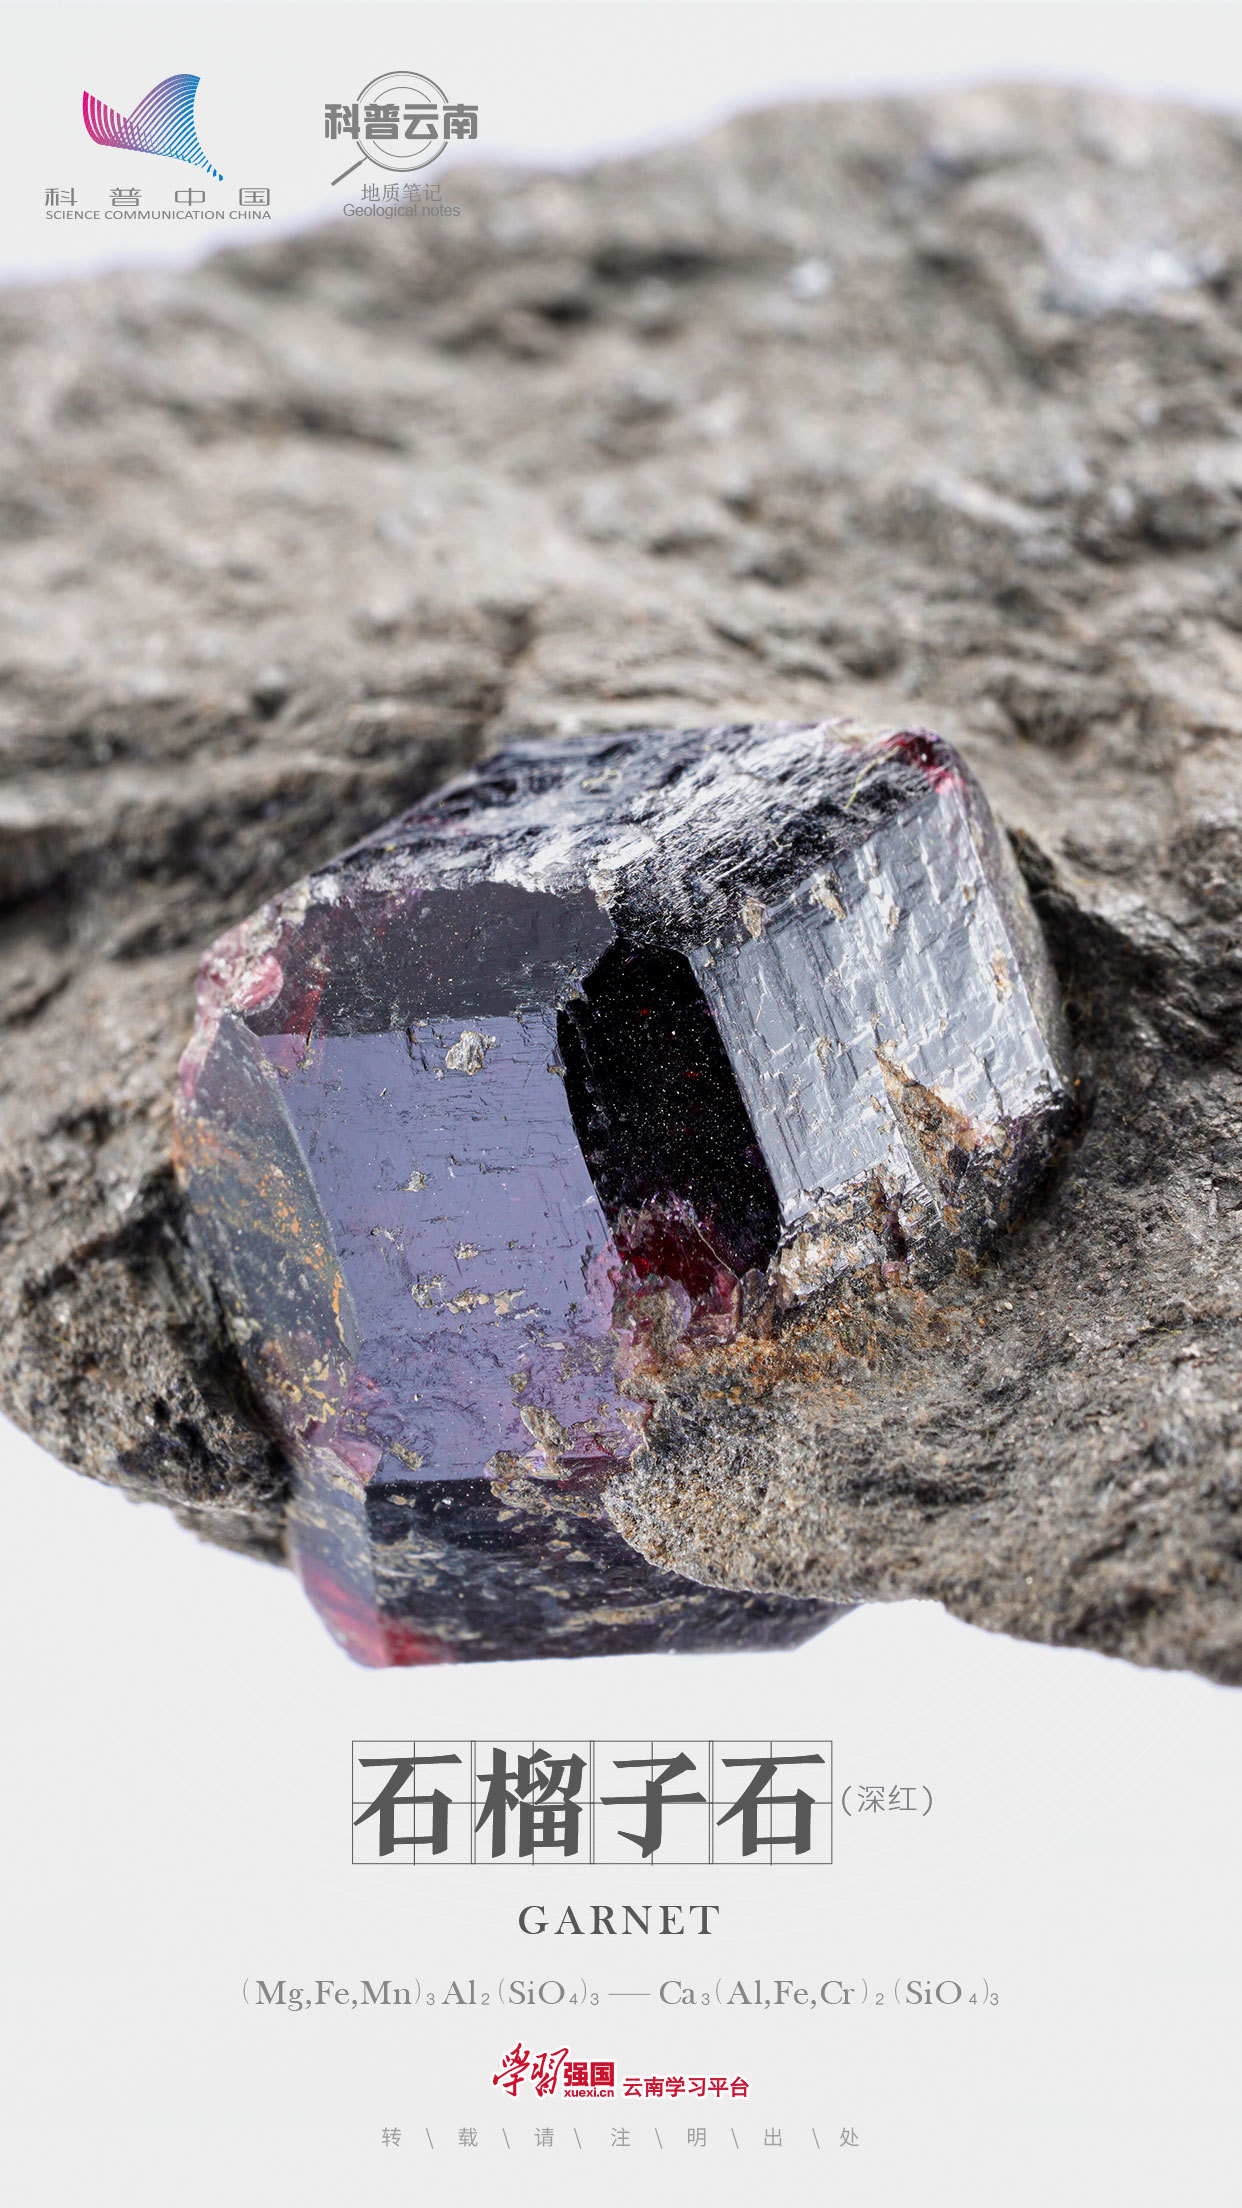 科普云南地质笔记石榴子石镶嵌在岩石中的彩色种子佩戴在身上的美丽